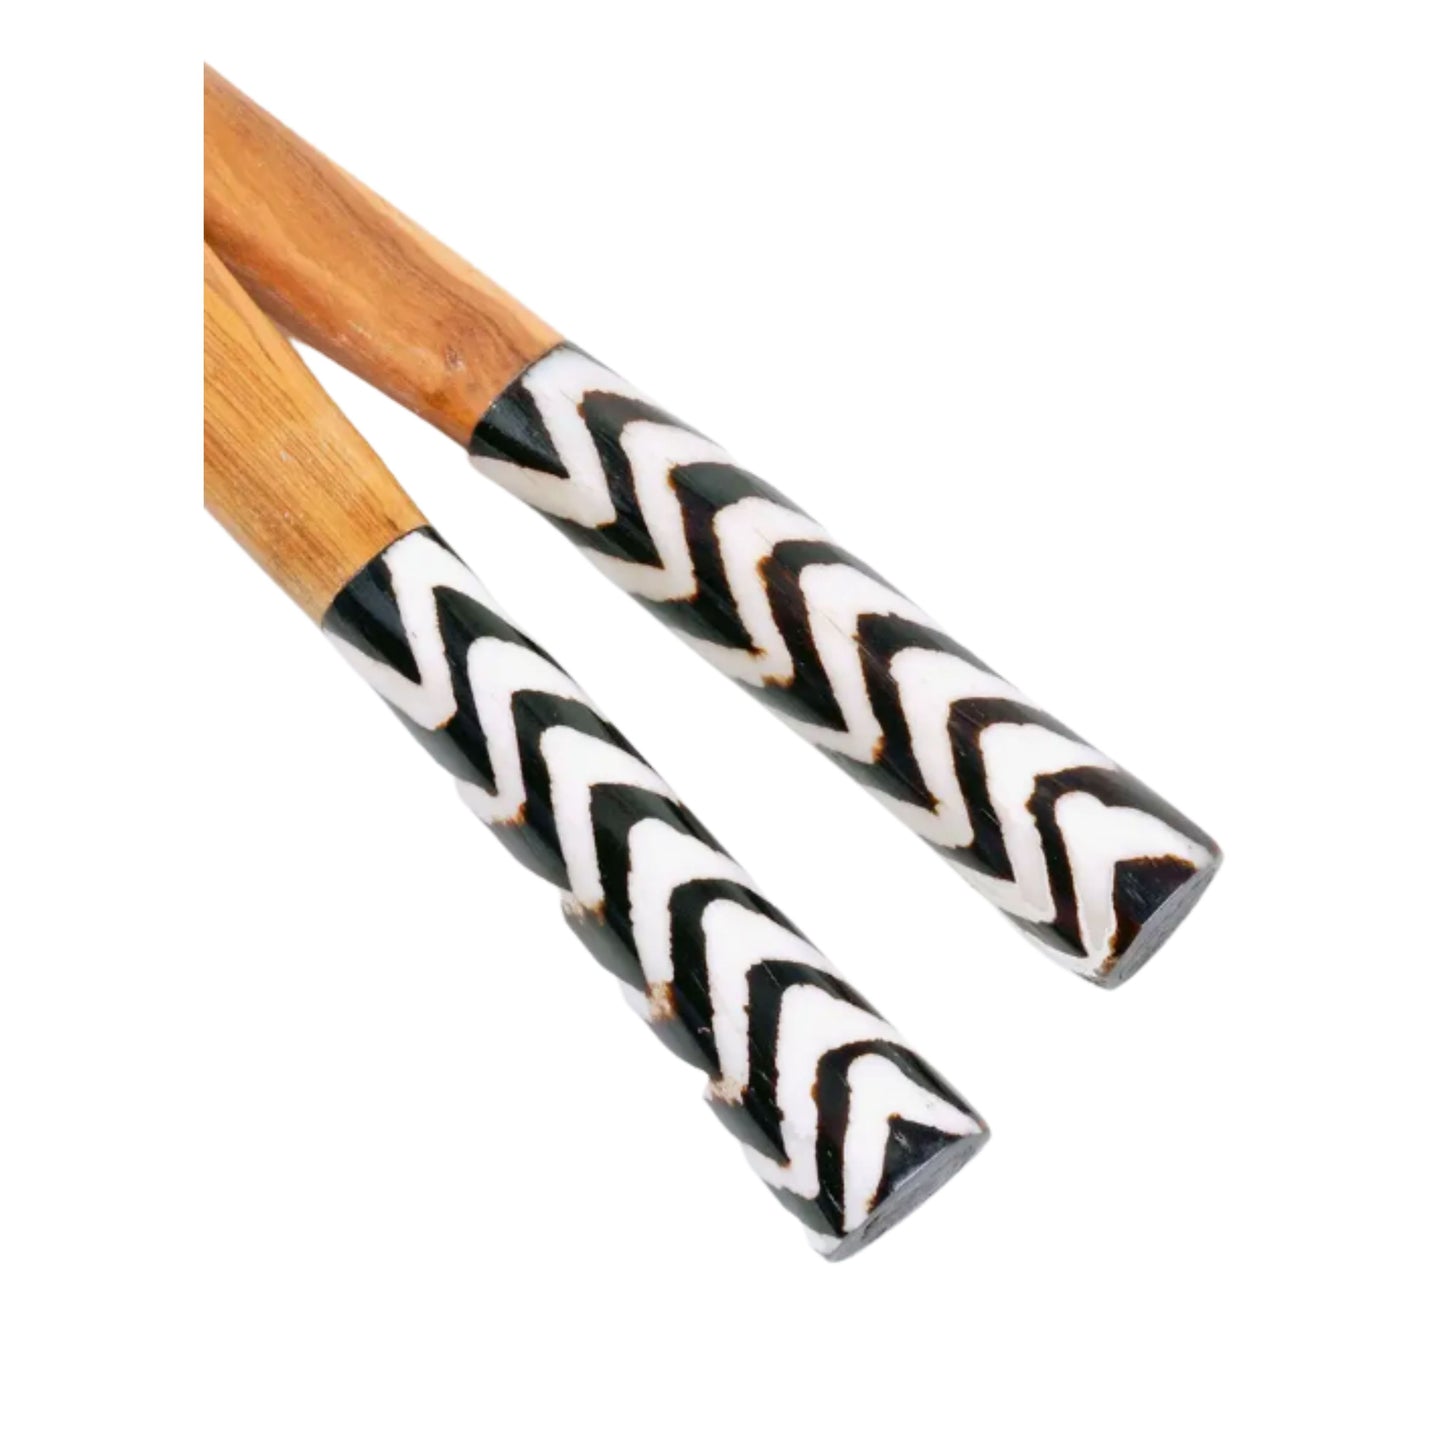 Hand-Carved Kenyan Olive Wood Wooden Chevron Stripe Design Bone Handles Salad Server Set Kitchen Utensils